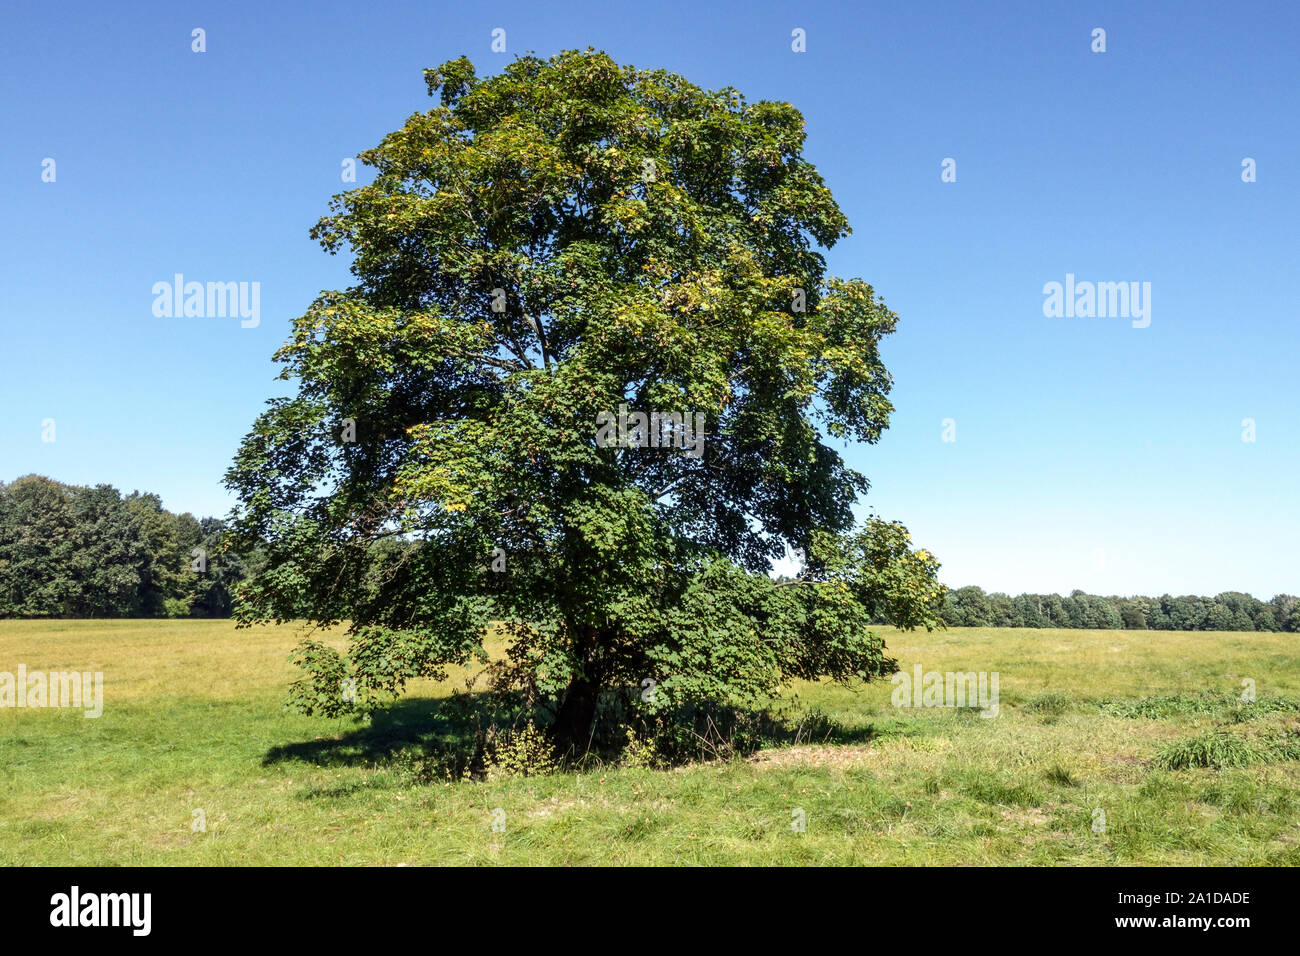 Sycamore arbre érable Acer pseudoplatanus arbre solitaire dans la campagne, République Tchèque grand arbre vert Banque D'Images